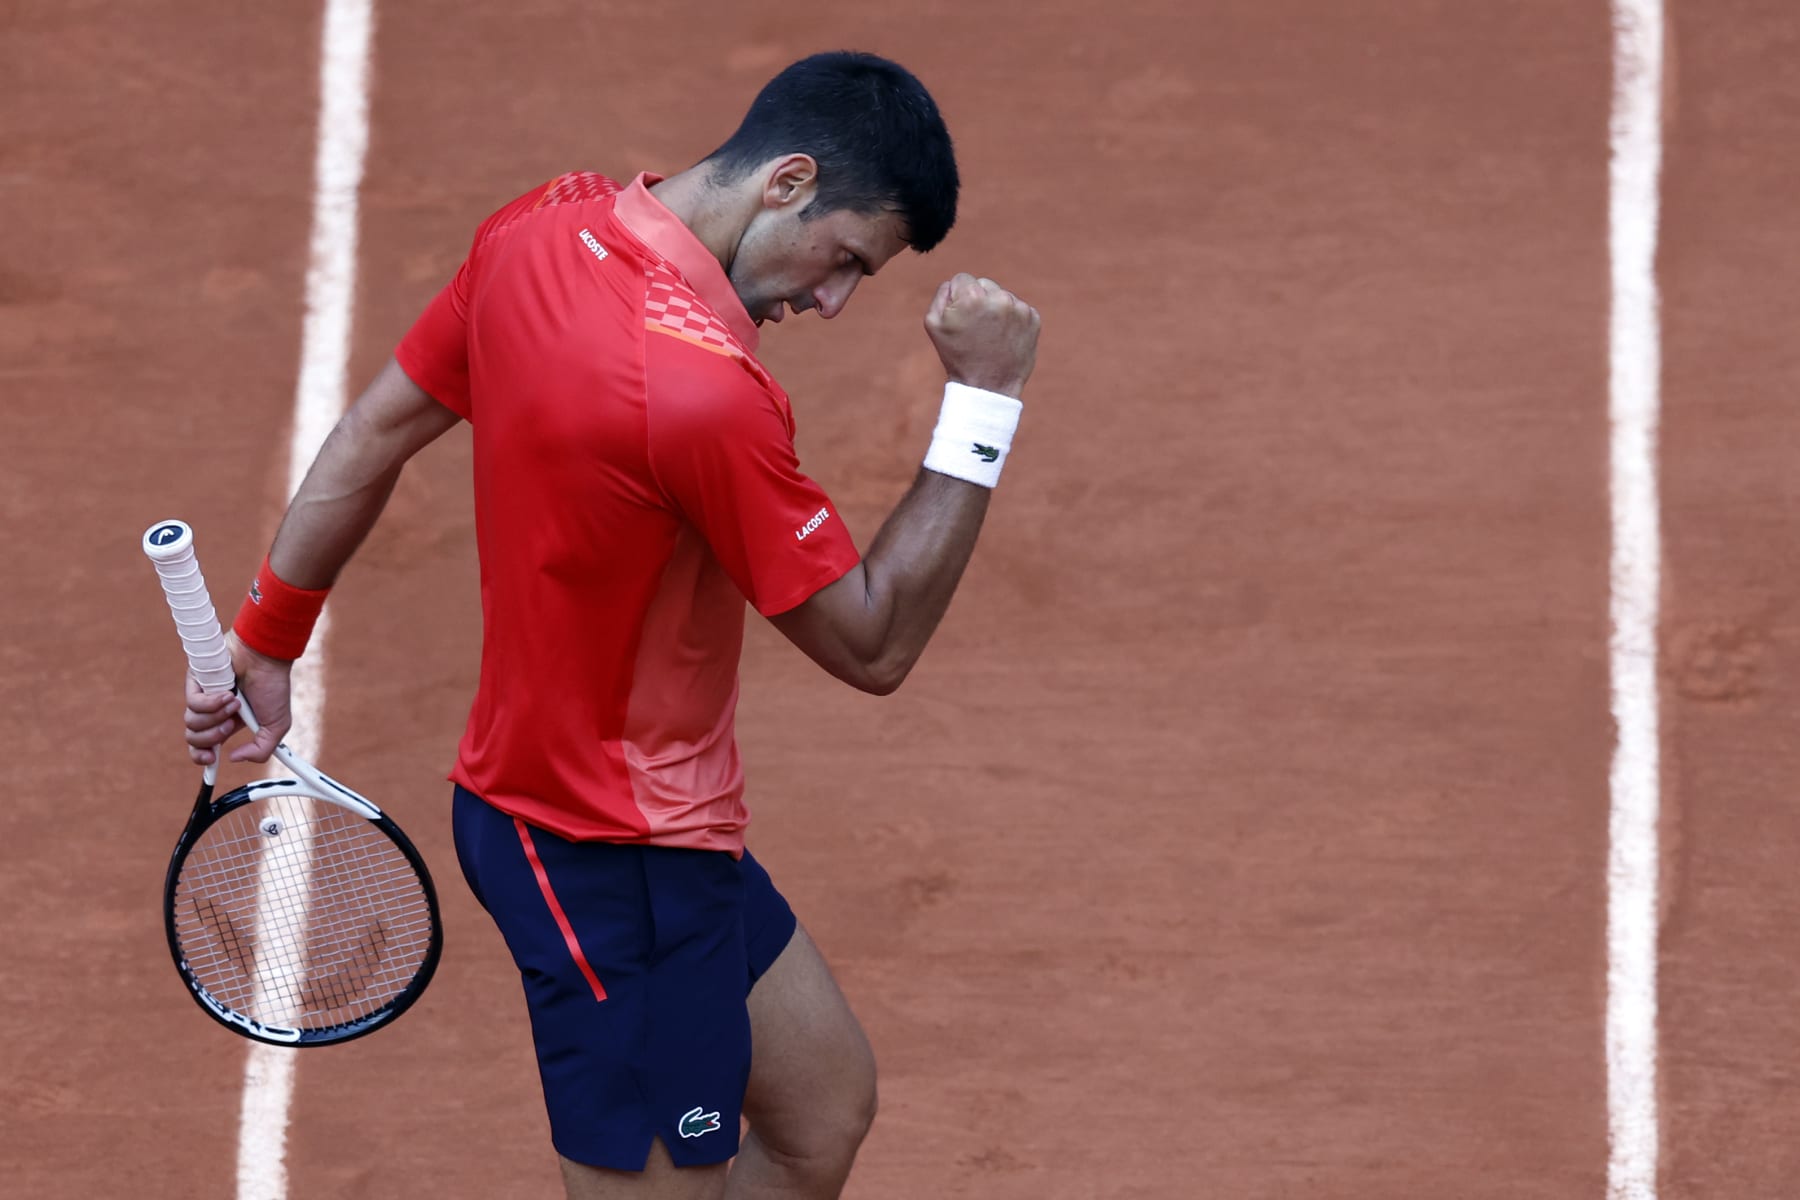 Holger Rune looks to dethrone Novak Djokovic at first Grand Slam